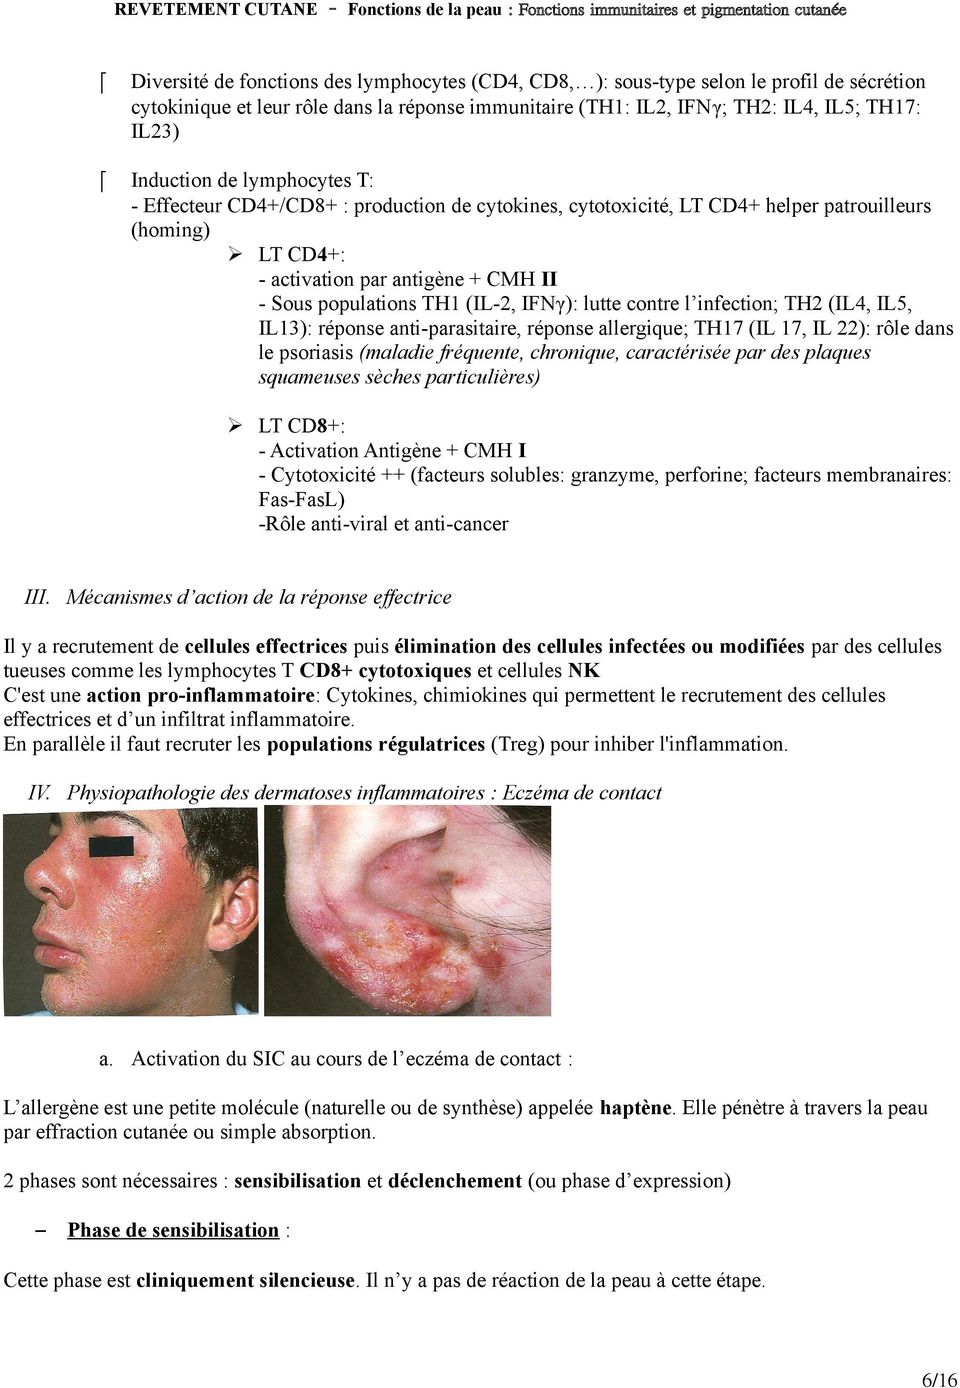 lutte contre l infection; TH2 (IL4, IL5, IL13): réponse anti-parasitaire, réponse allergique; TH17 (IL 17, IL 22): rôle dans le psoriasis (maladie fréquente, chronique, caractérisée par des plaques